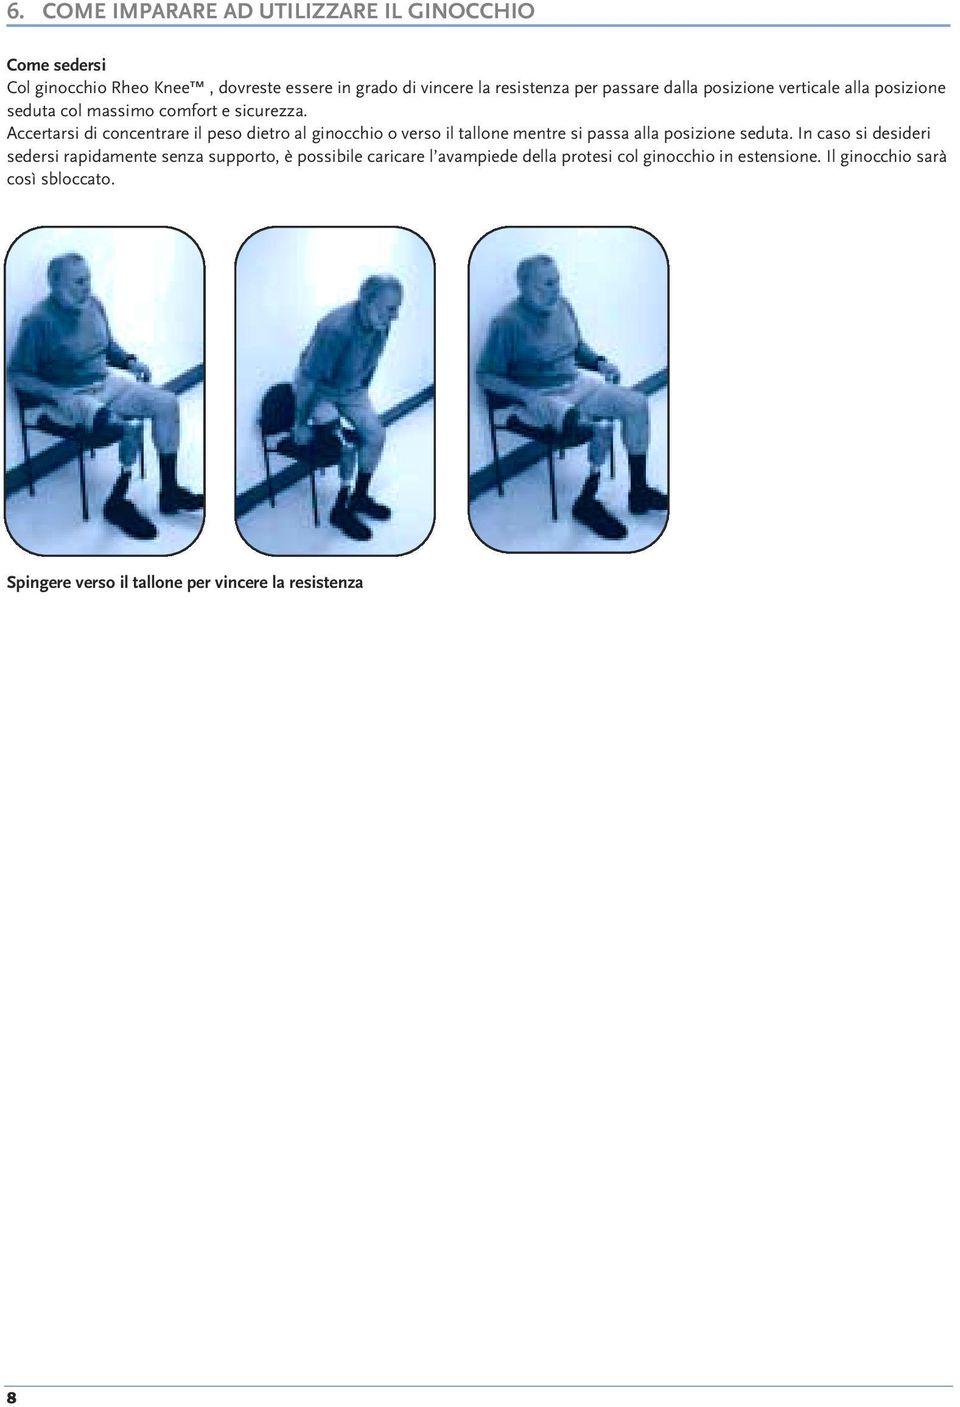 Accertarsi di concentrare il peso dietro al ginocchio o verso il tallone mentre si passa alla posizione seduta.